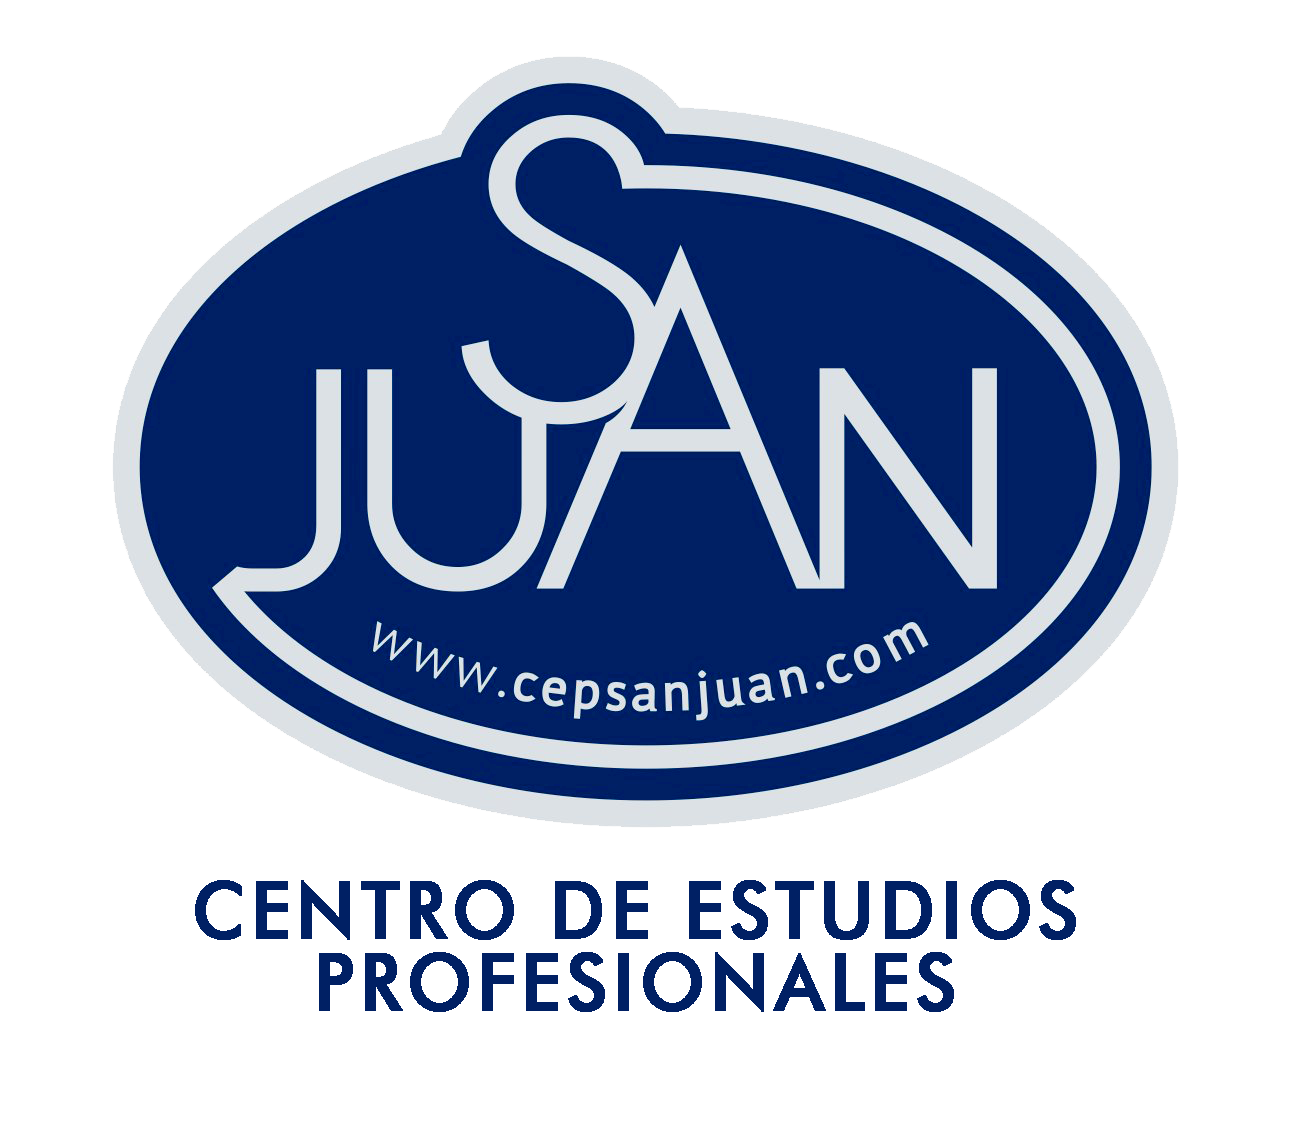 Centro de Estudios Profesionales San Juan